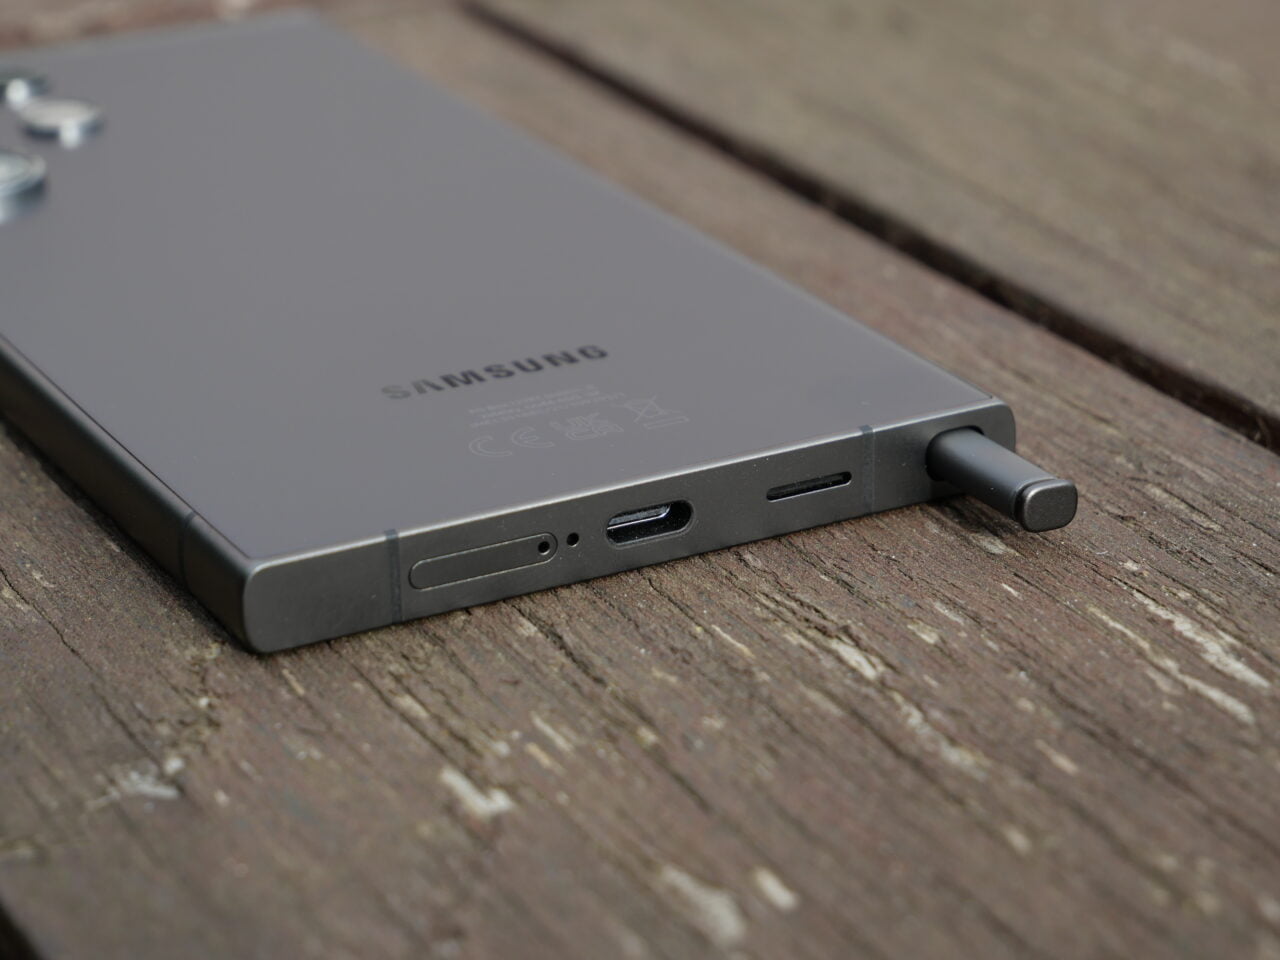 Szary smartfon marki Samsung leżący na drewnianej powierzchni z widocznym wyciągniętym rysikiem S Pen i portami na bocznym brzegu.